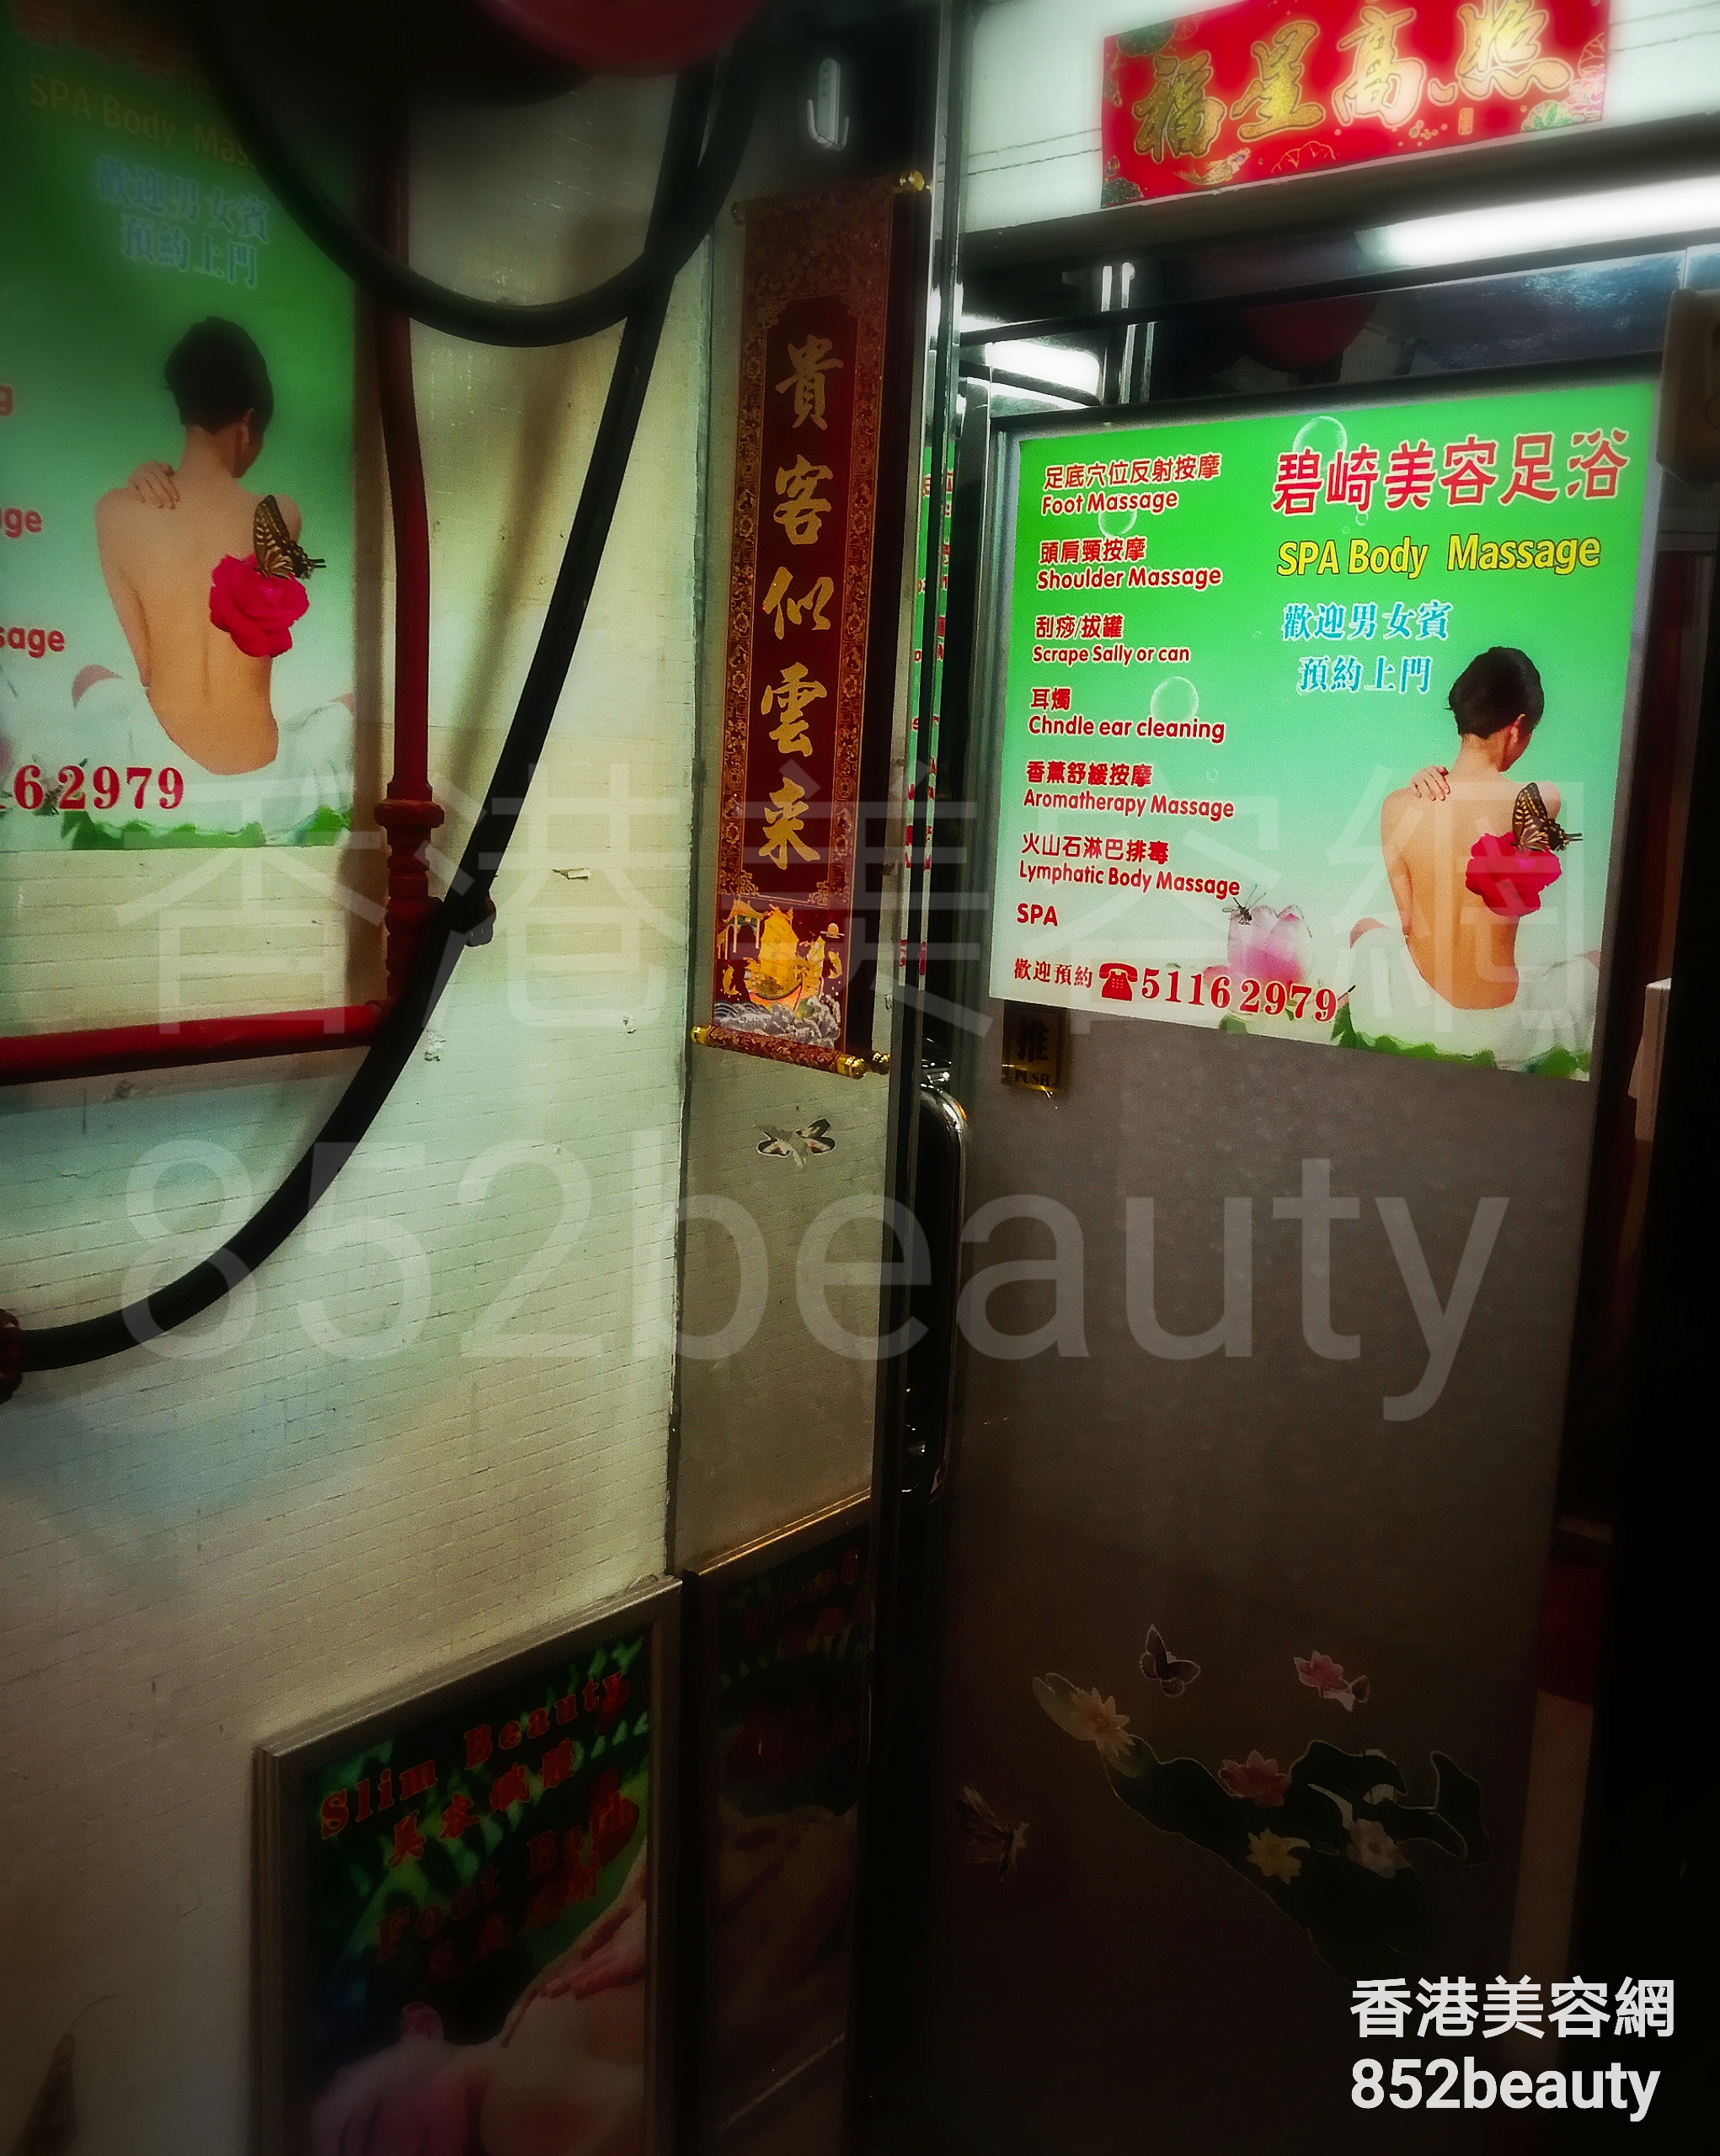 Hong Kong Beauty Salon Beauty Salon / Beautician: 碧崎美容足浴